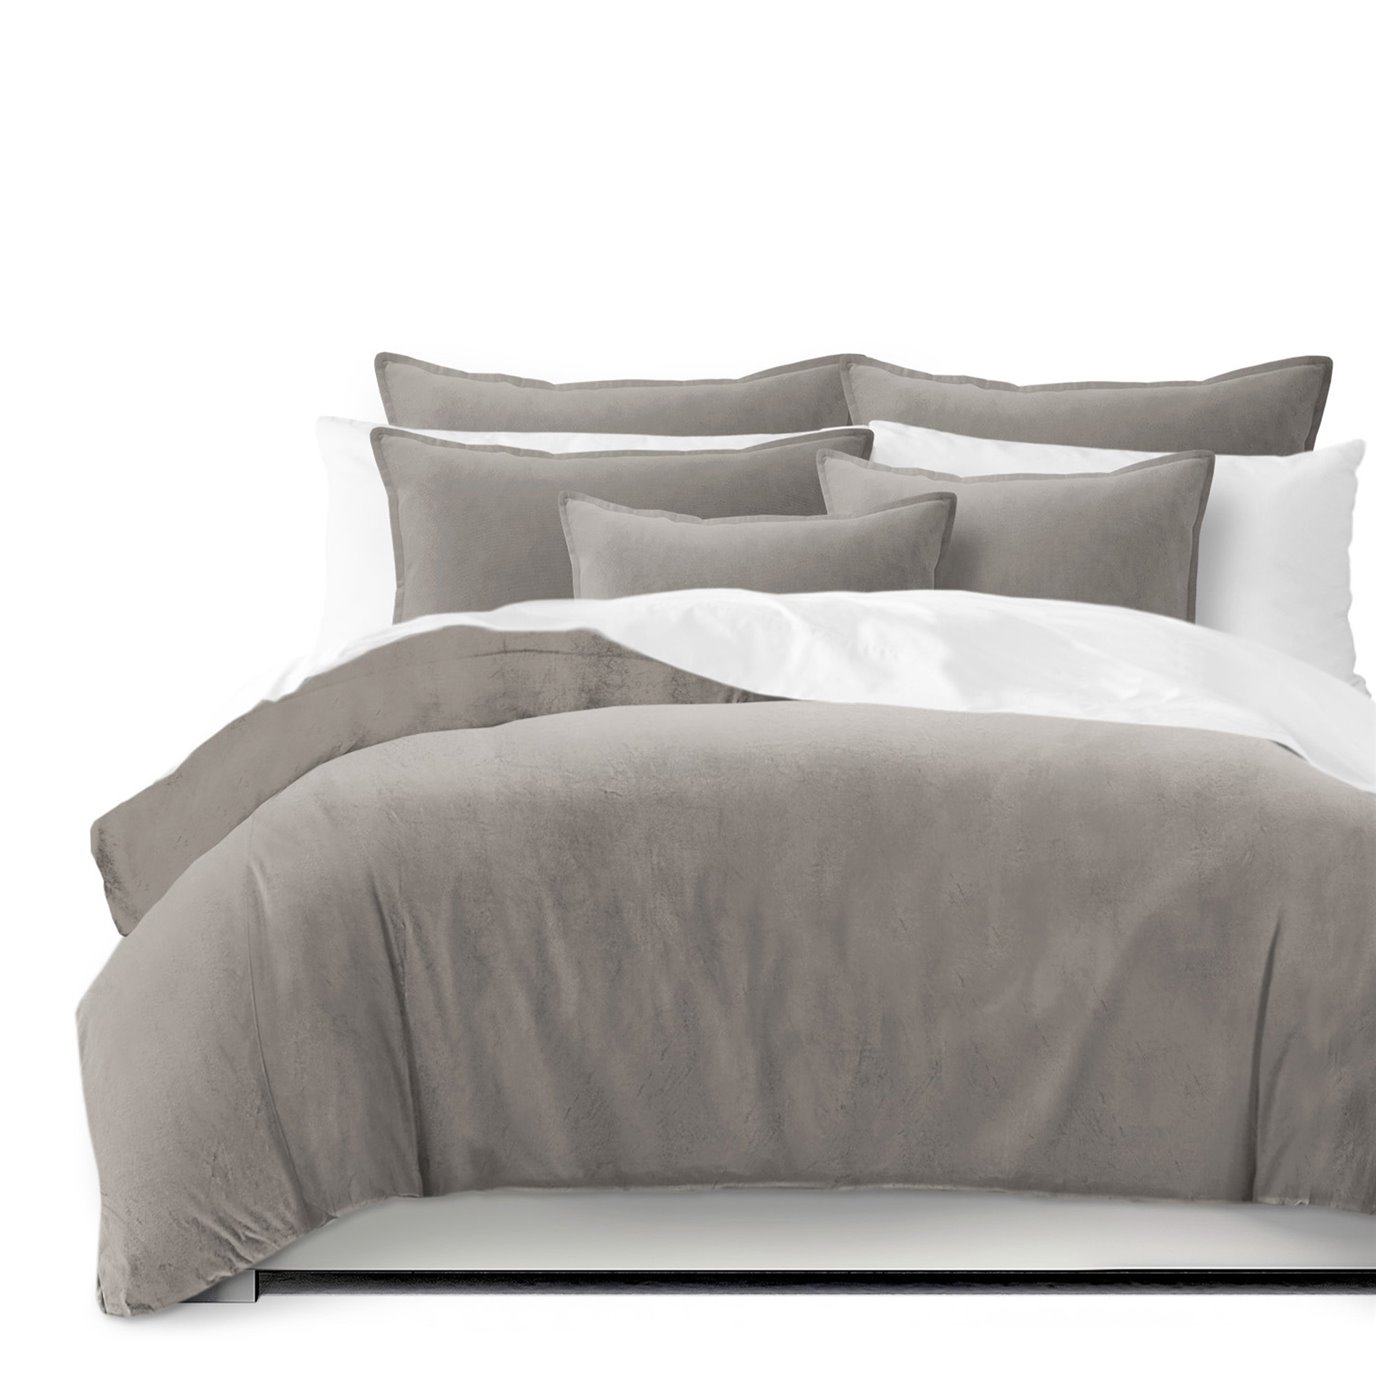 Vanessa Greige Comforter and Pillow Sham(s) Set - Size Queen